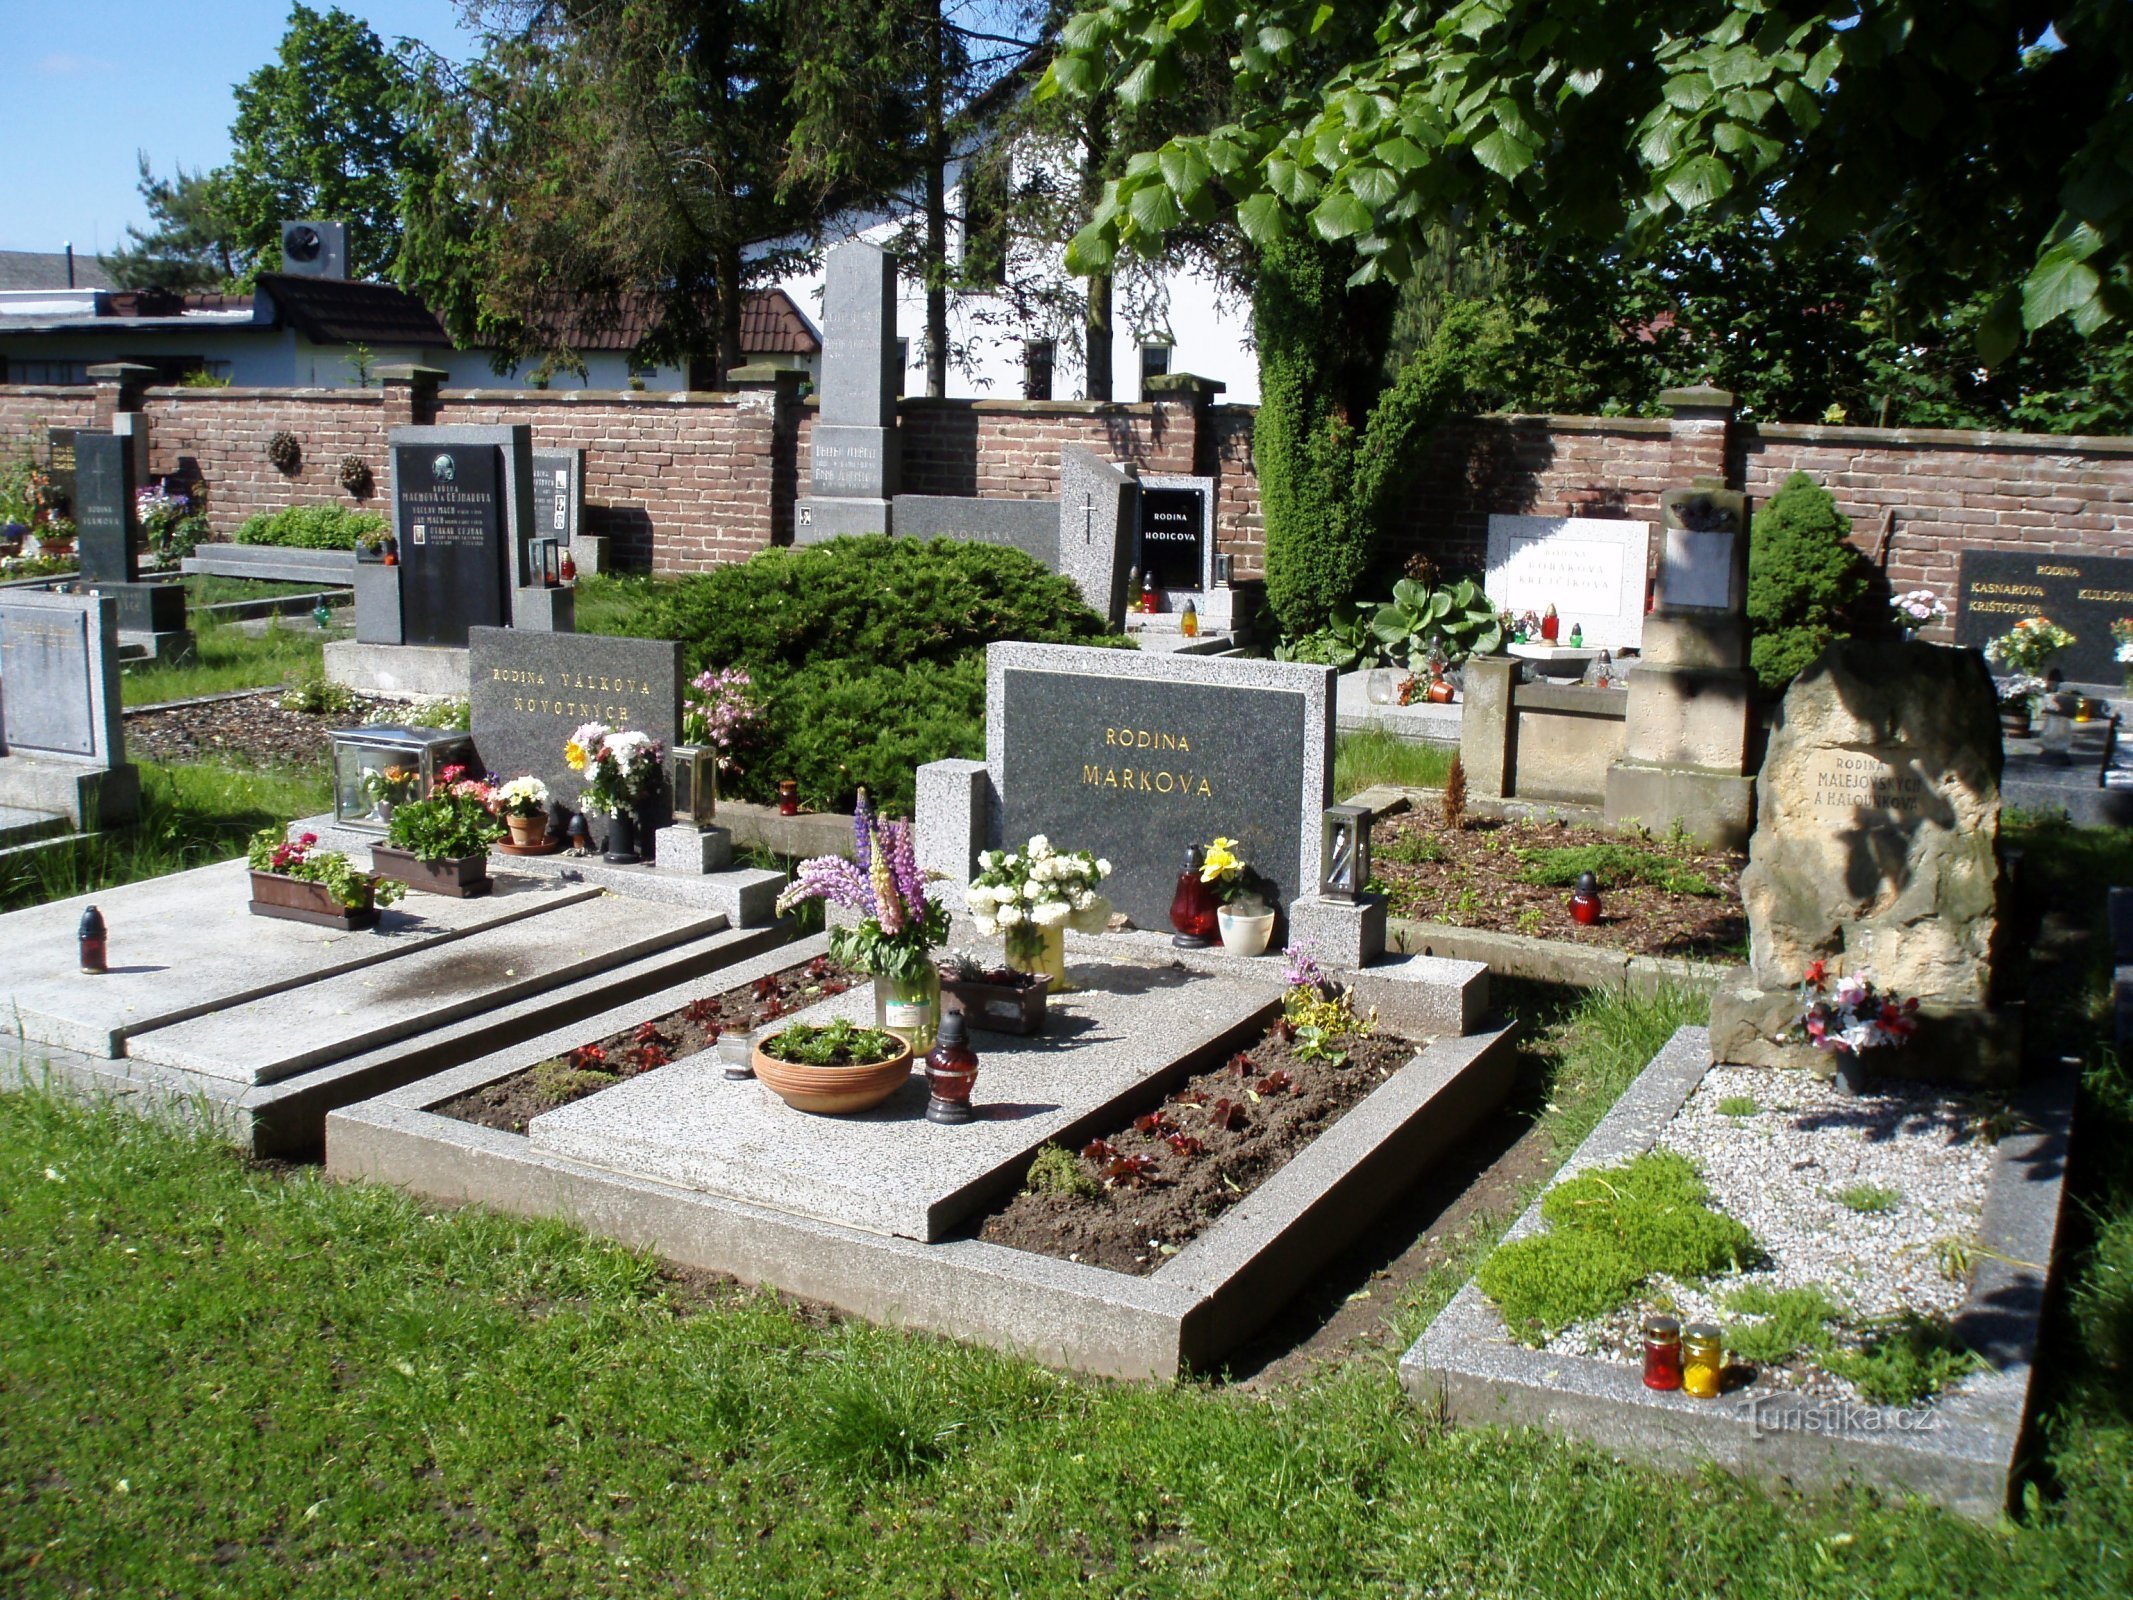 Katoliško pokopališče v Svinaryju (Hradec Králové, 4.6.2010. junij XNUMX)